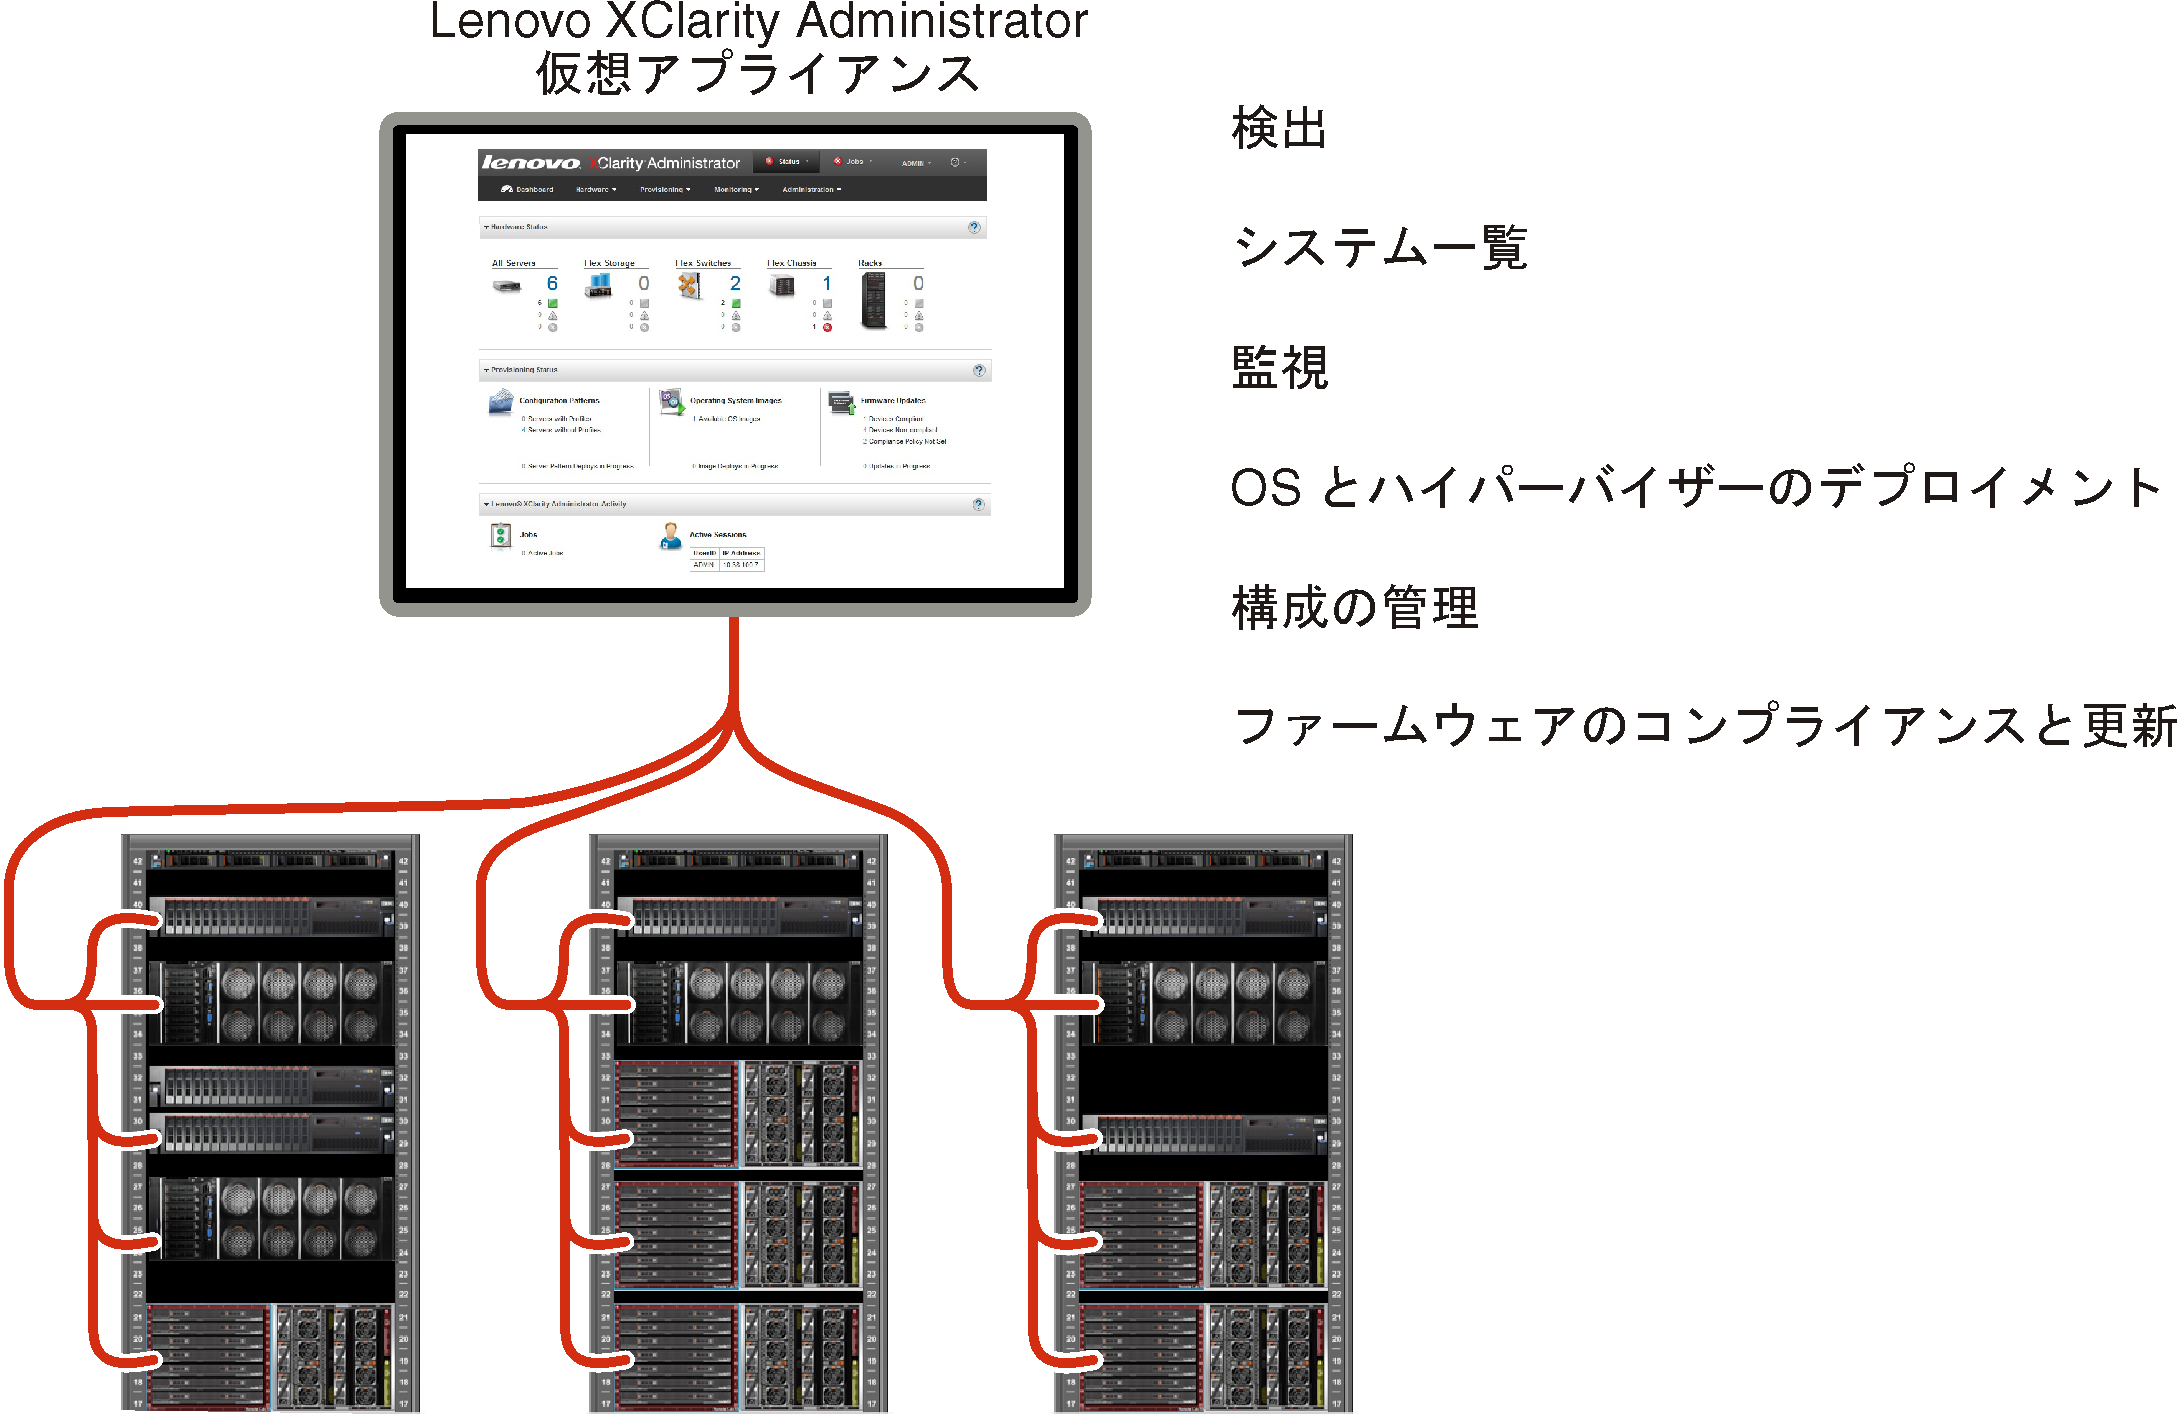 複数のシャーシを管理する Lenovo XClarity Administrator と、Lenovo XClarity Administrator の主な機能を示す図